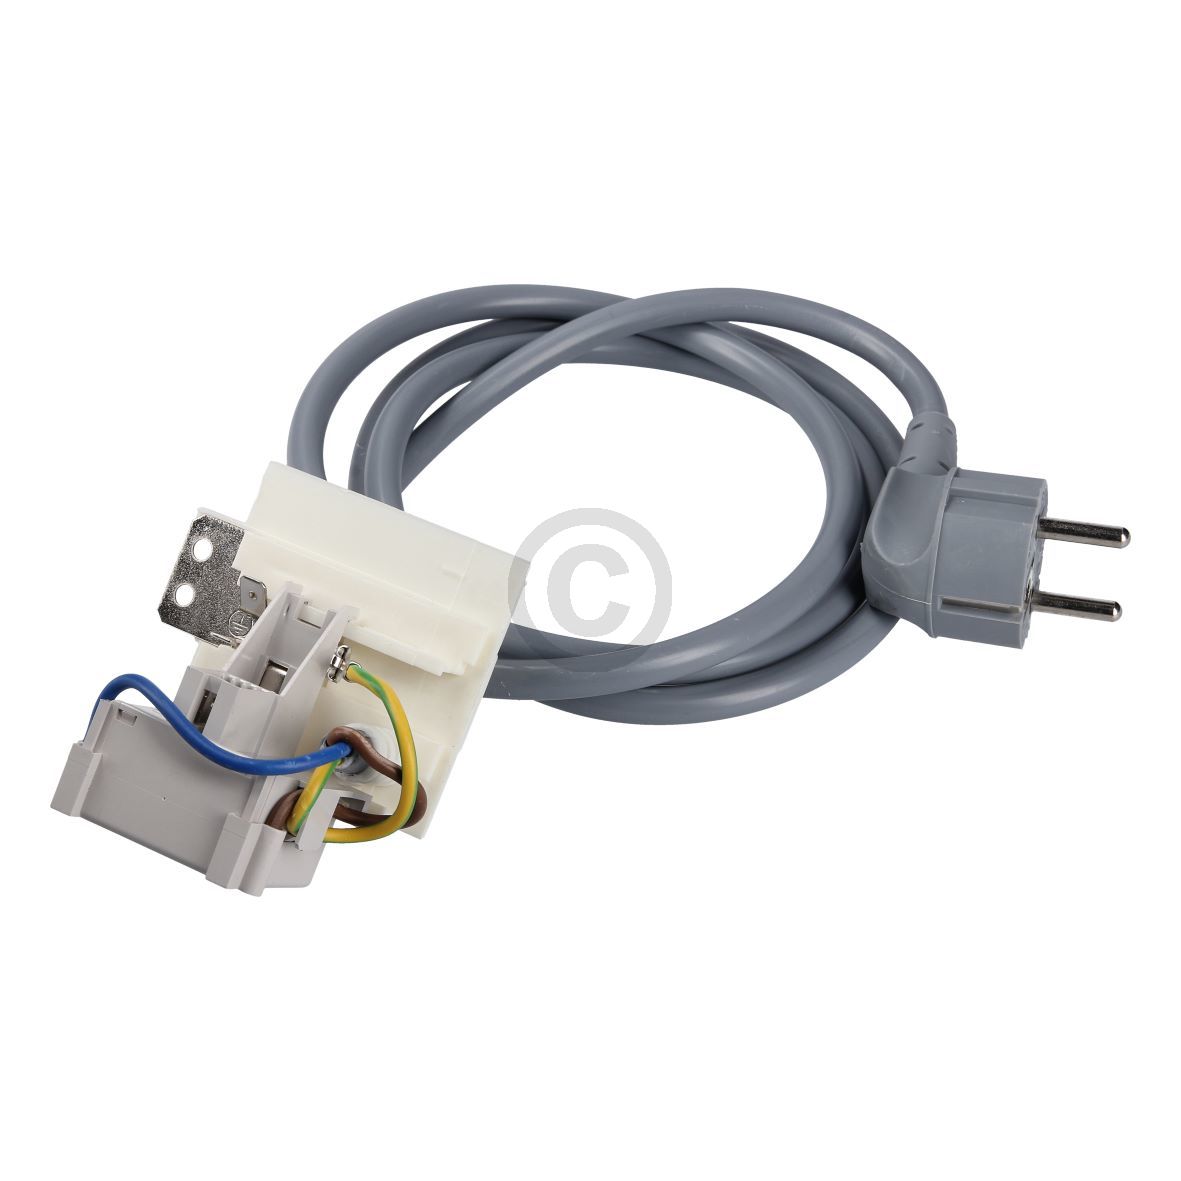 Anschlusskabel ZANUSSI 136409011-6 1- 5m mit Netzfilter für Trockner (EA-1364090116)